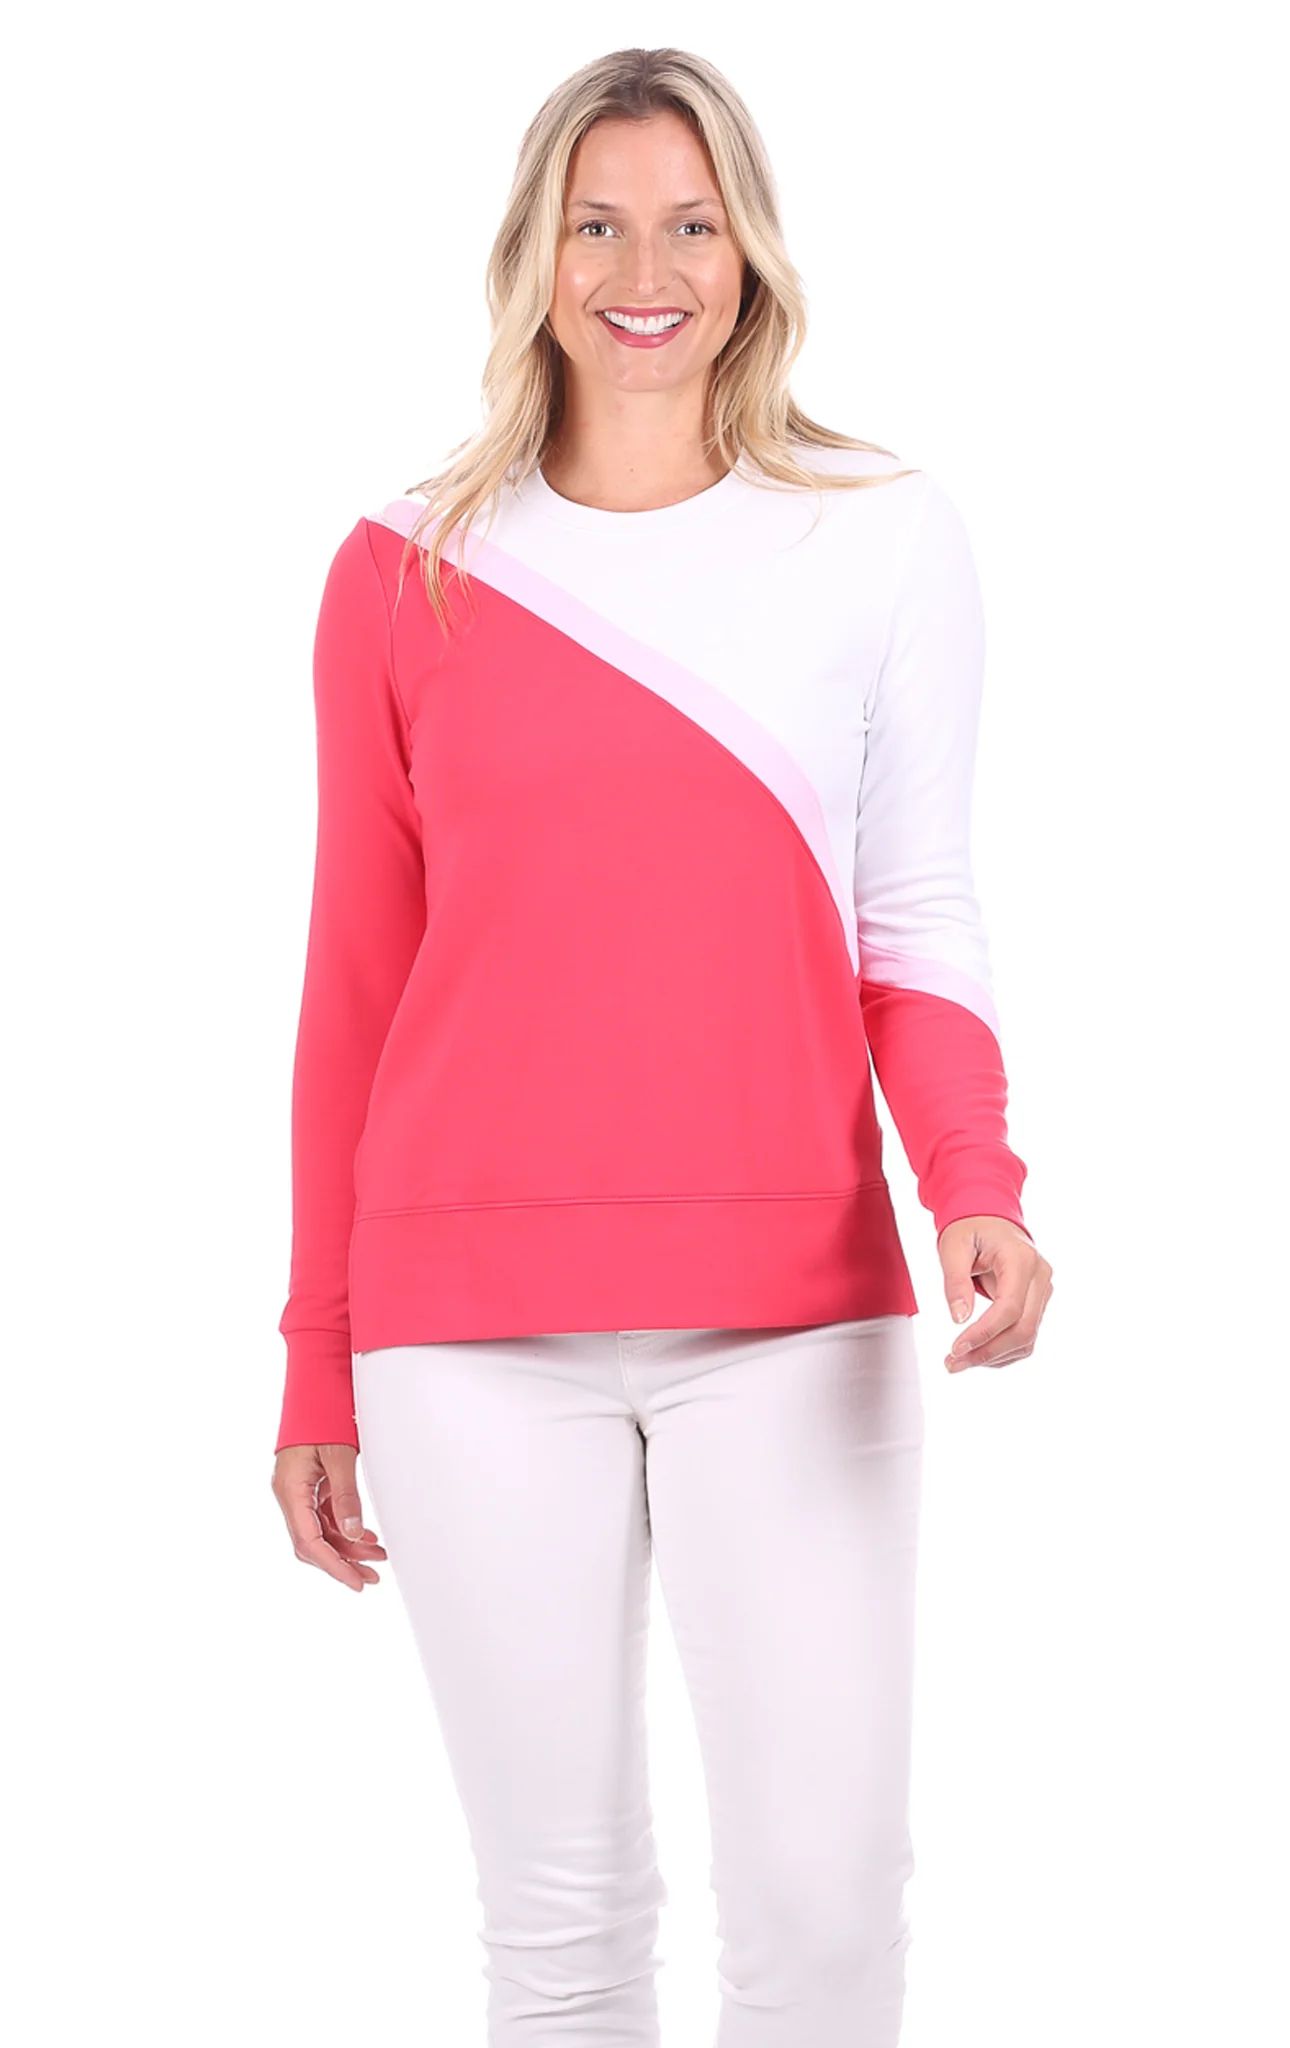 London Sweatshirt in Pink Colorblock | Duffield Lane